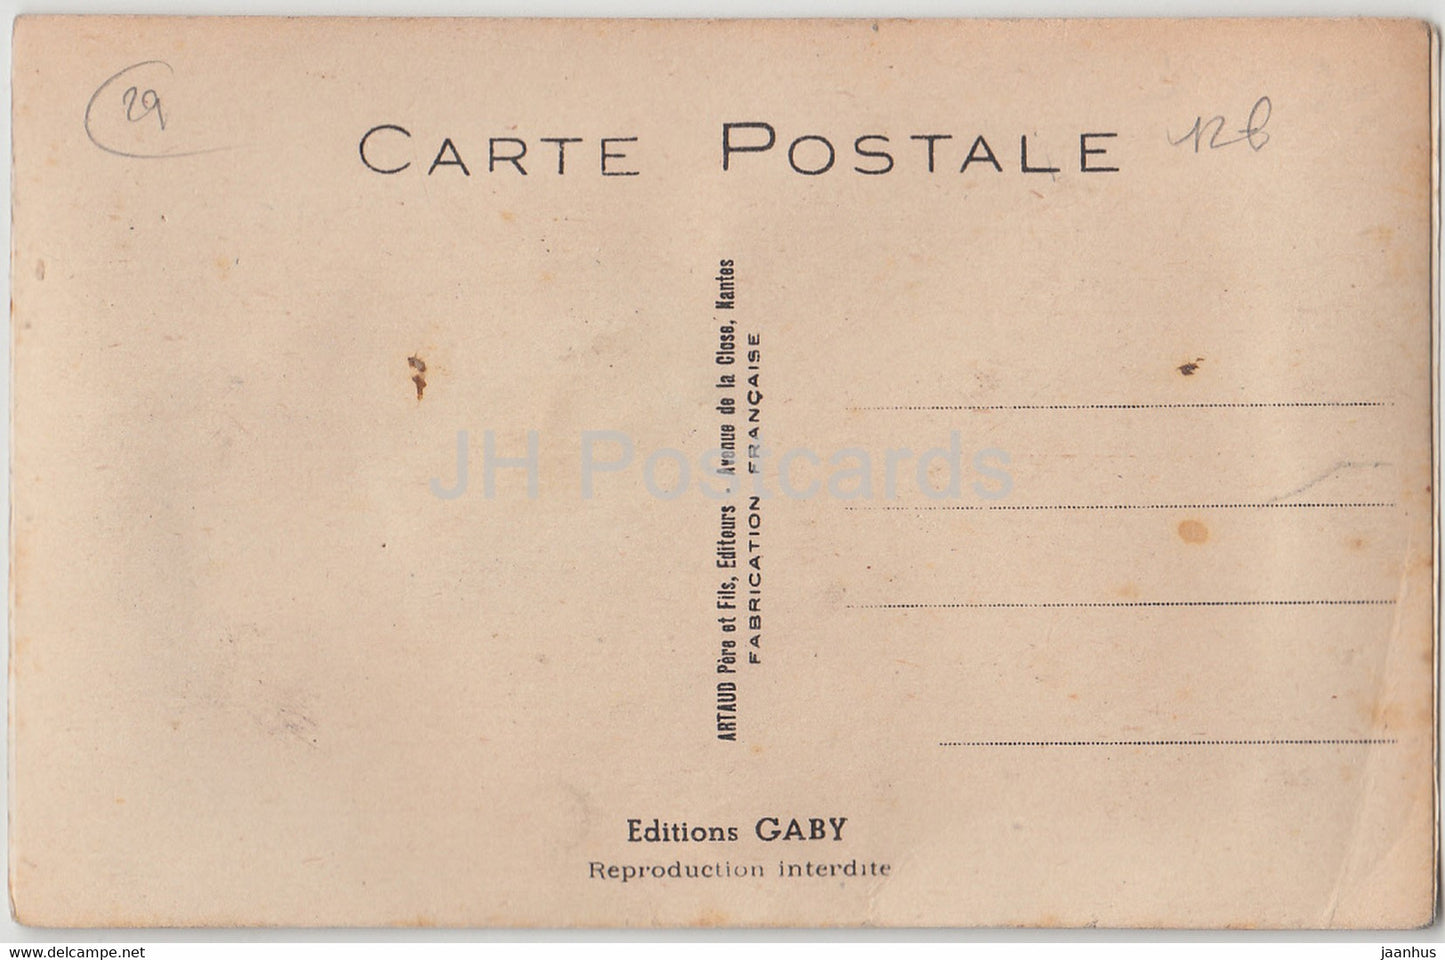 En route pour Carhaix - humour - carte postale ancienne - France - inutilisée